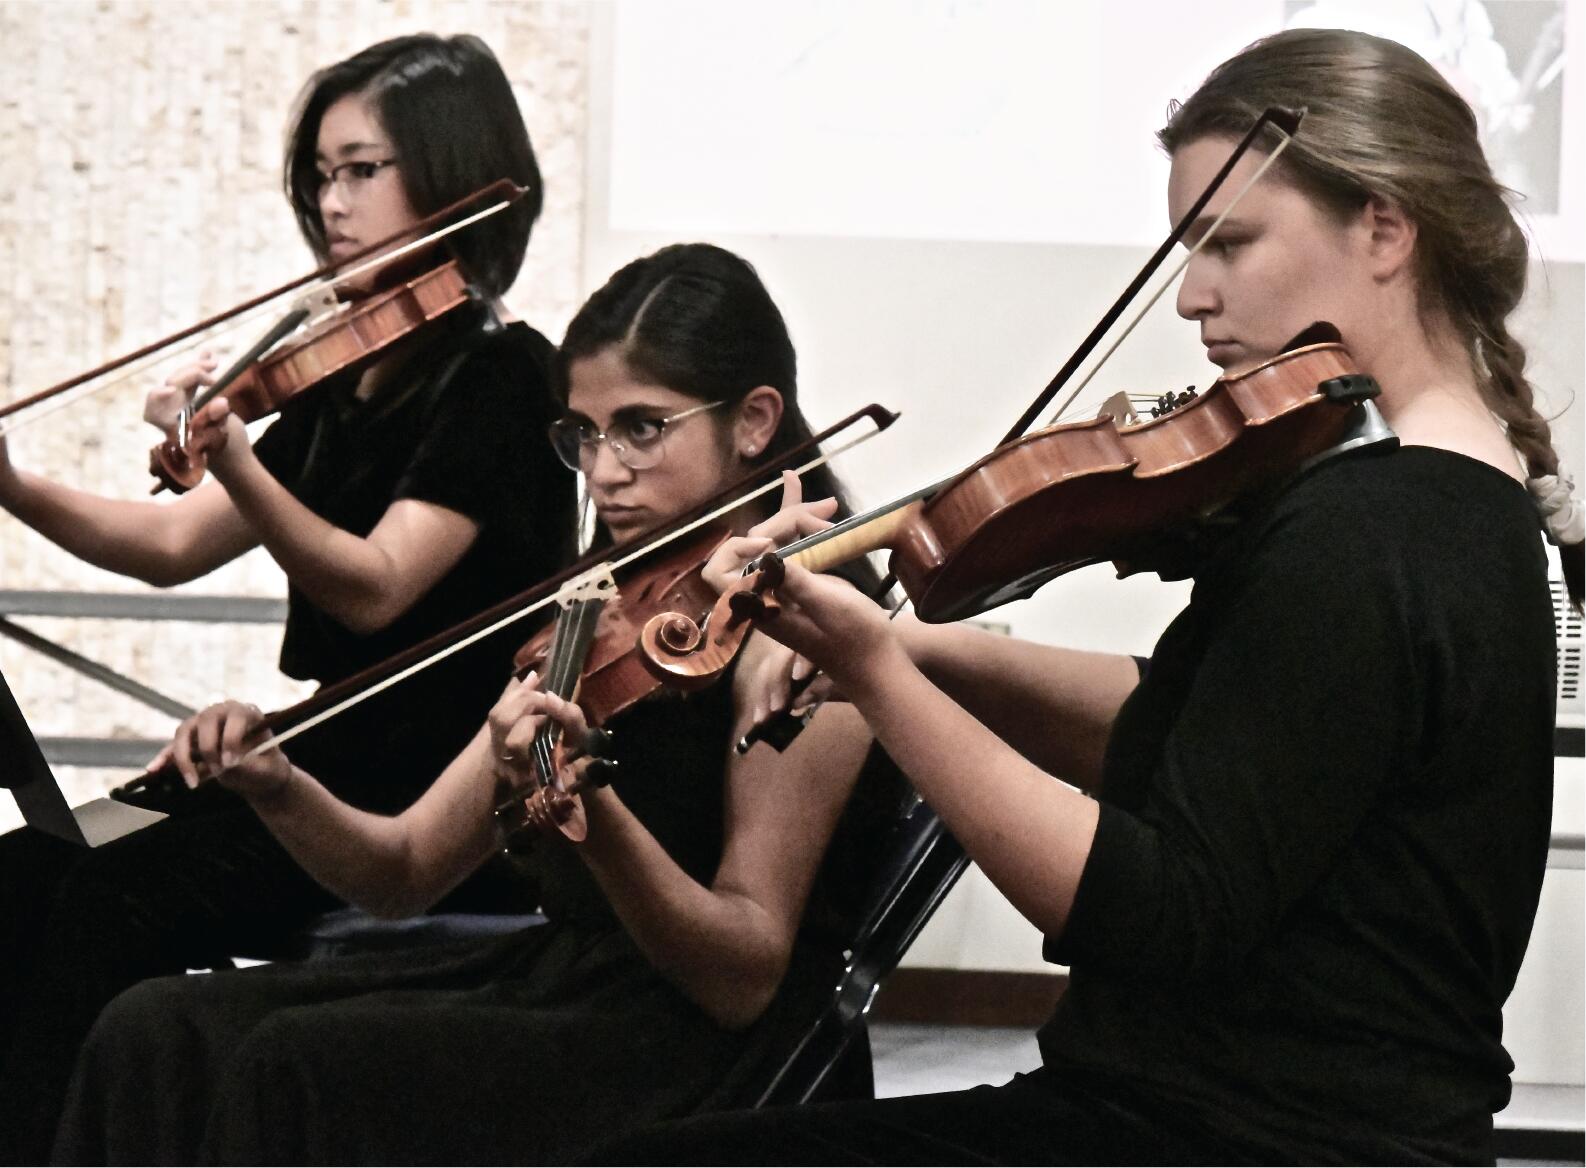 students playing violin